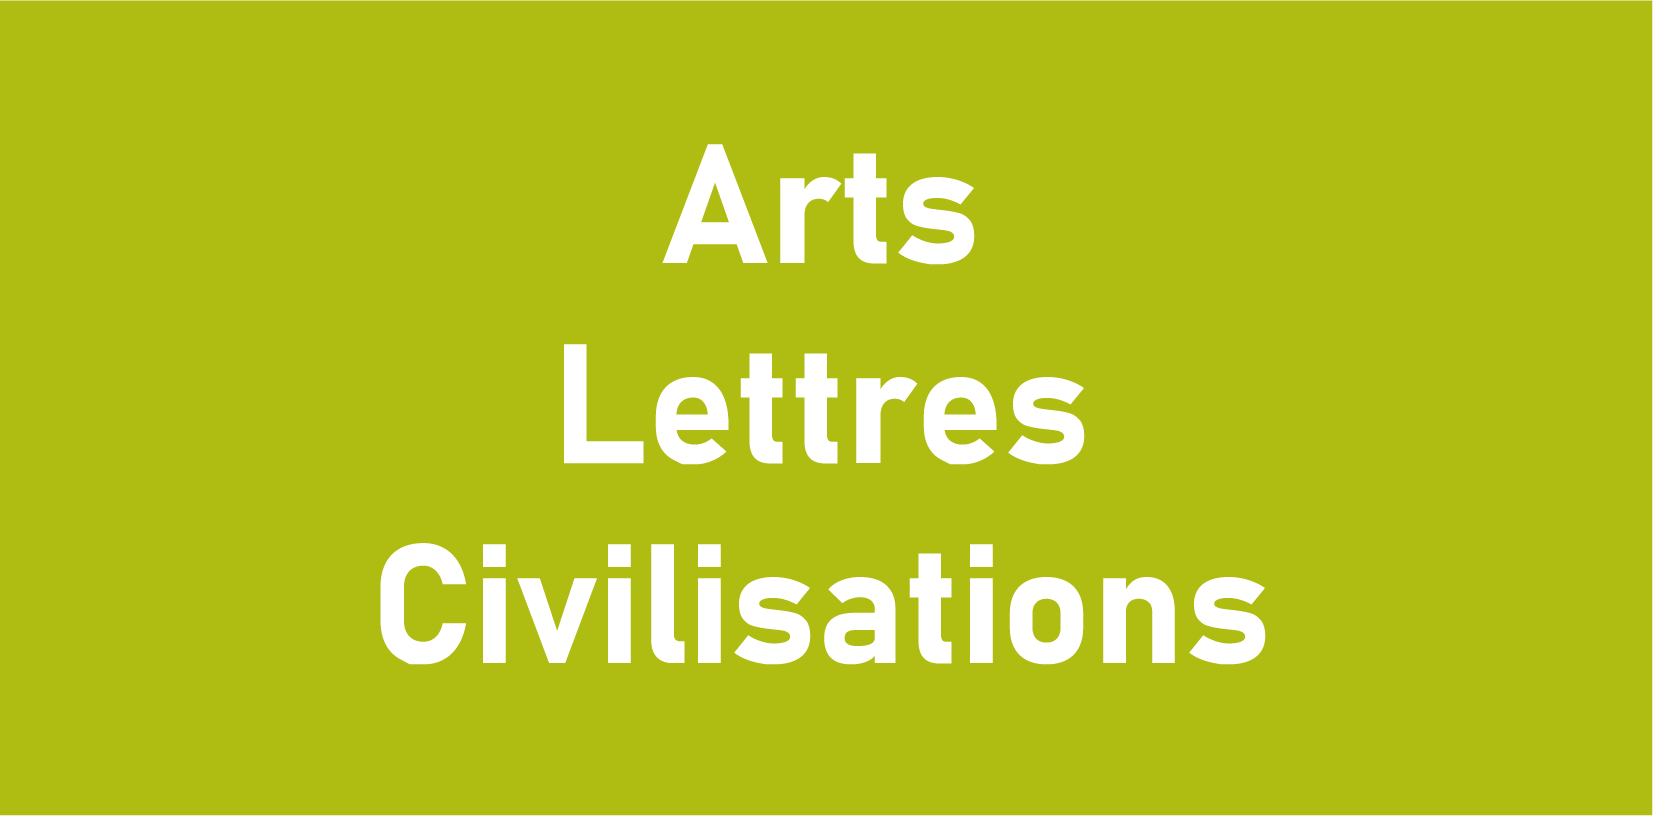 Arts lettres civilisations